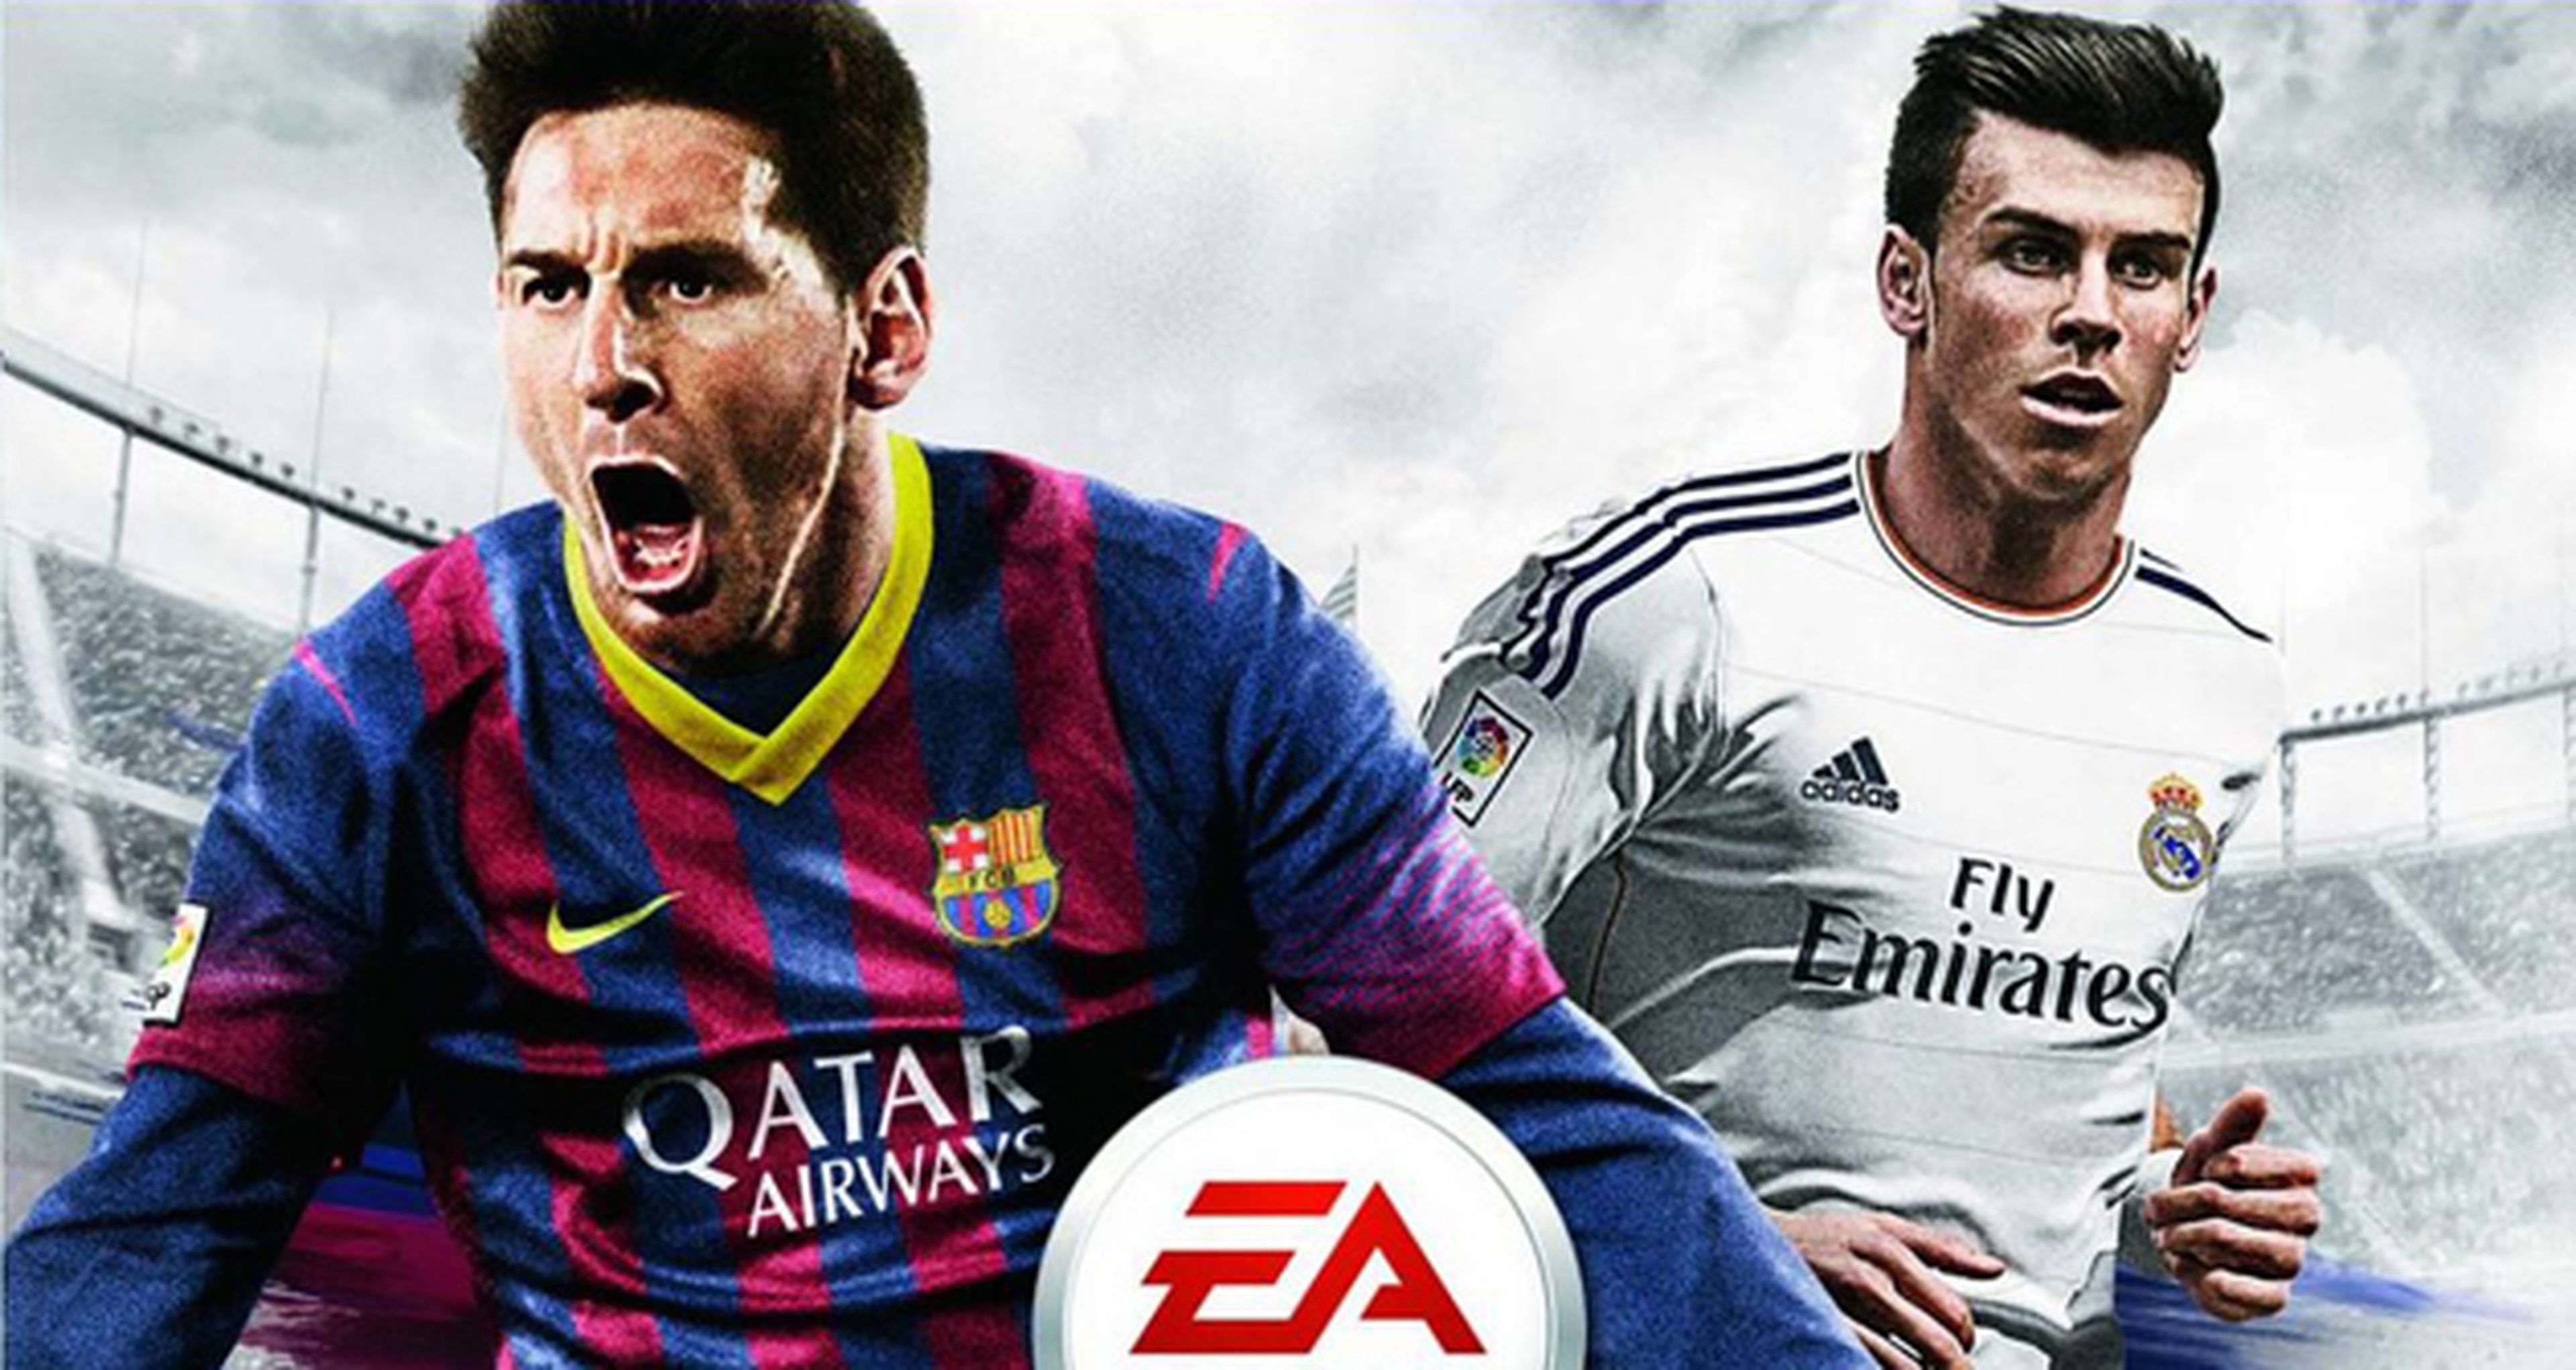 La carátula británica de FIFA 14 tras el fichaje de Gareth Bale